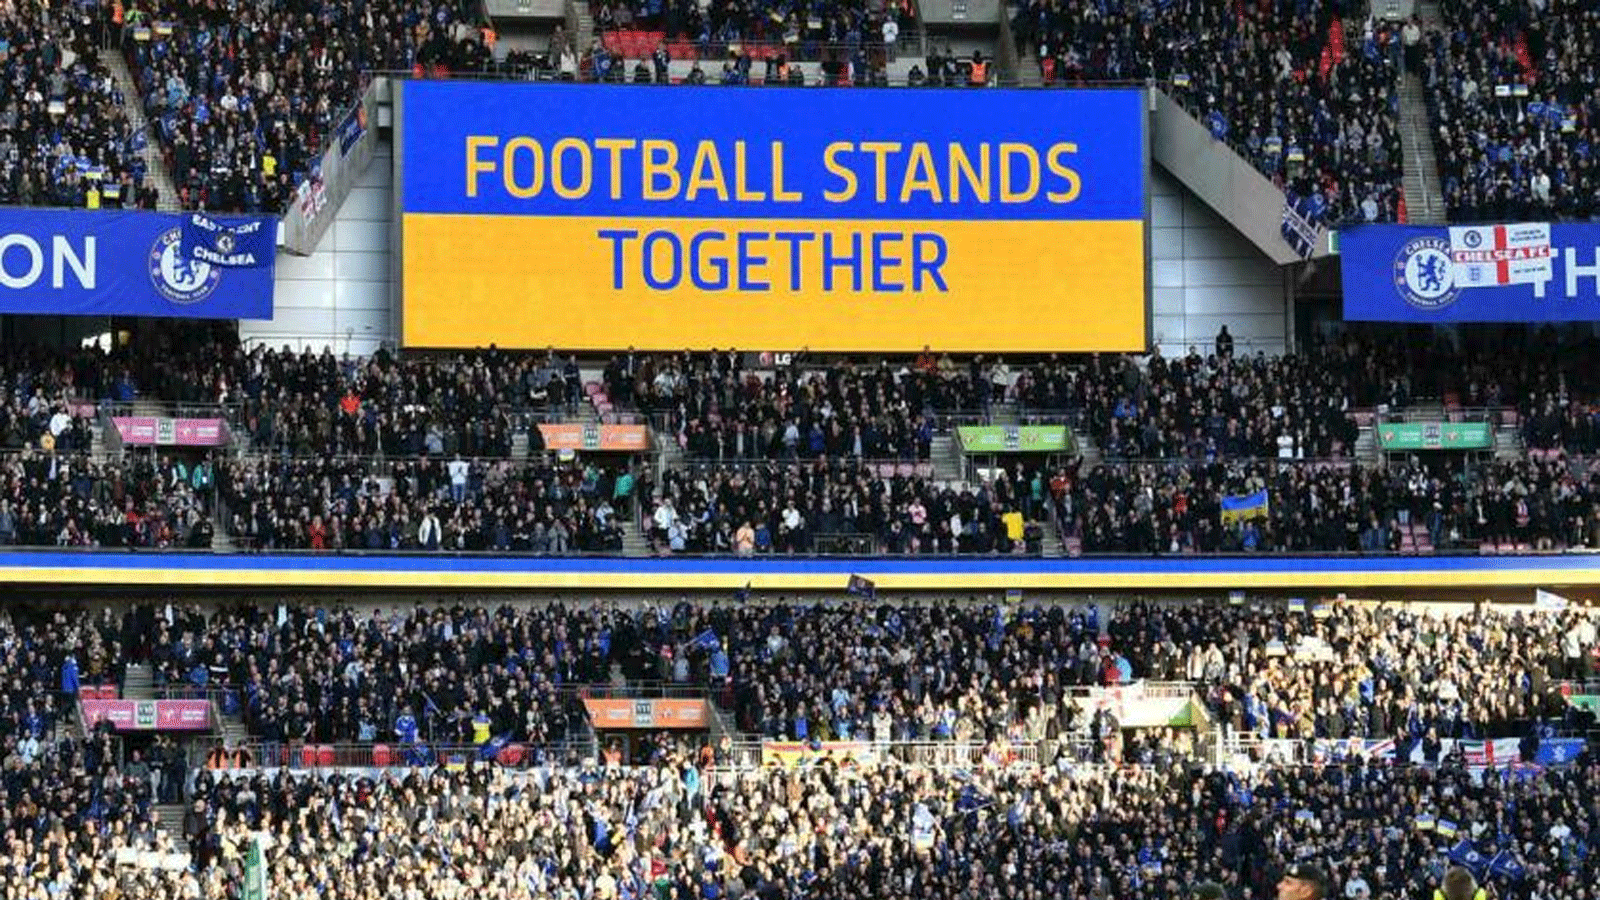  رسالة تضامن كروية بألوان أوكرانية تُعرَض قبل مباراة كرة القدم النهائية لكأس الرابطة الإنكليزية بين تشيلسي وليفربول على ملعب ويمبلي. 